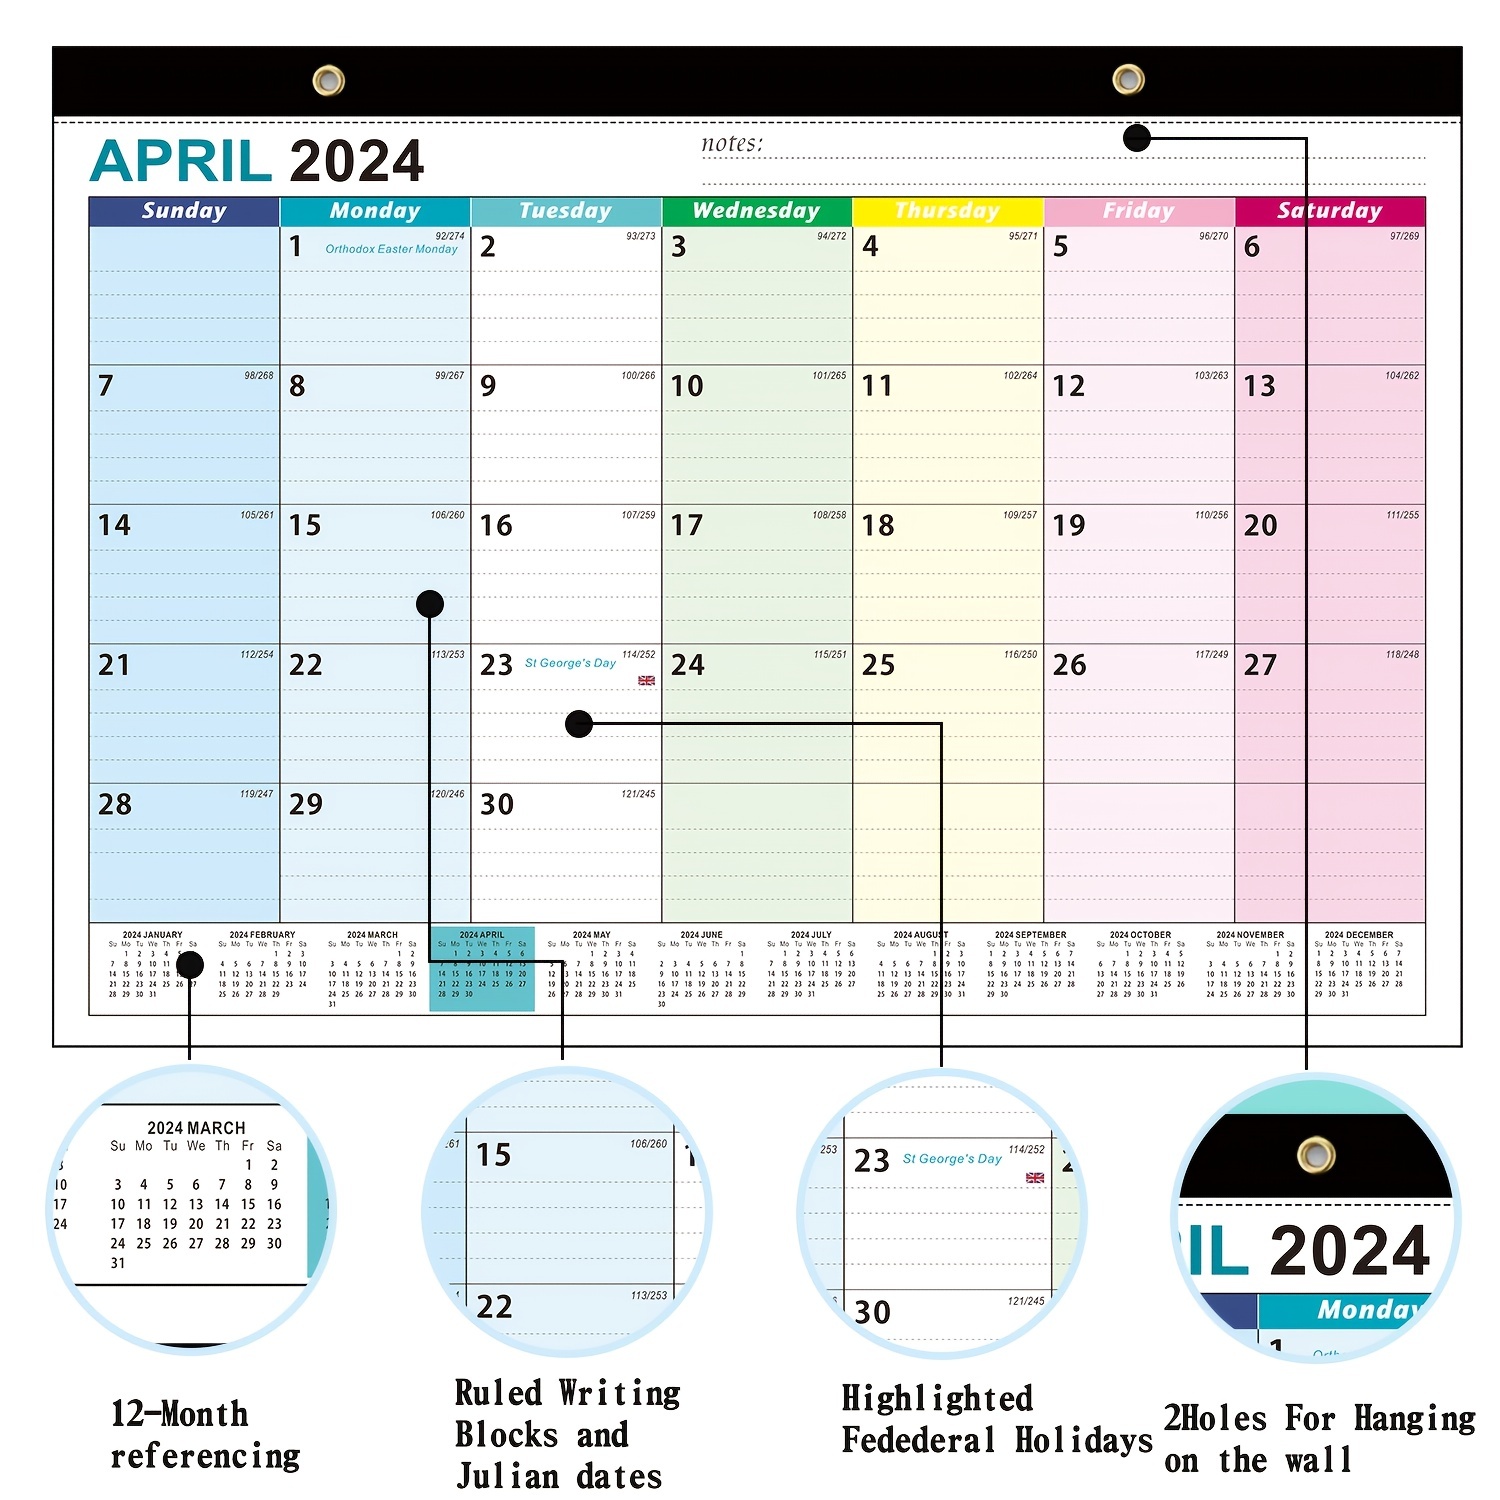 Agenda Mensuel Professionnel et Familial 2024-2025: Planner Personnalisé,  Planificateur Familial et Calendrier Organisationnel pour une Gestion